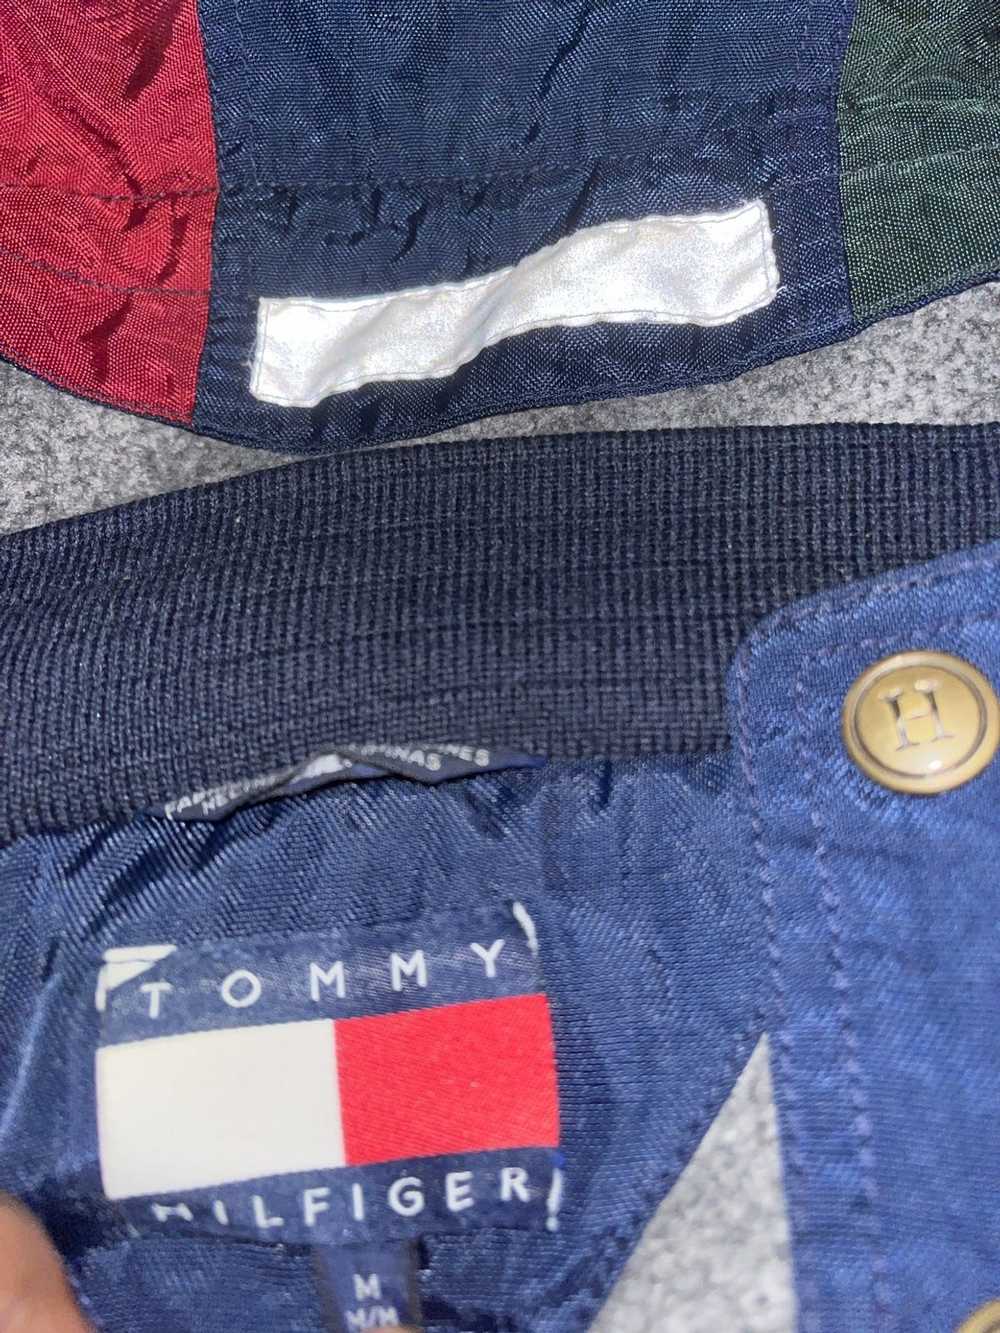 Tommy Hilfiger Tommy Hilfiger jacket - image 2